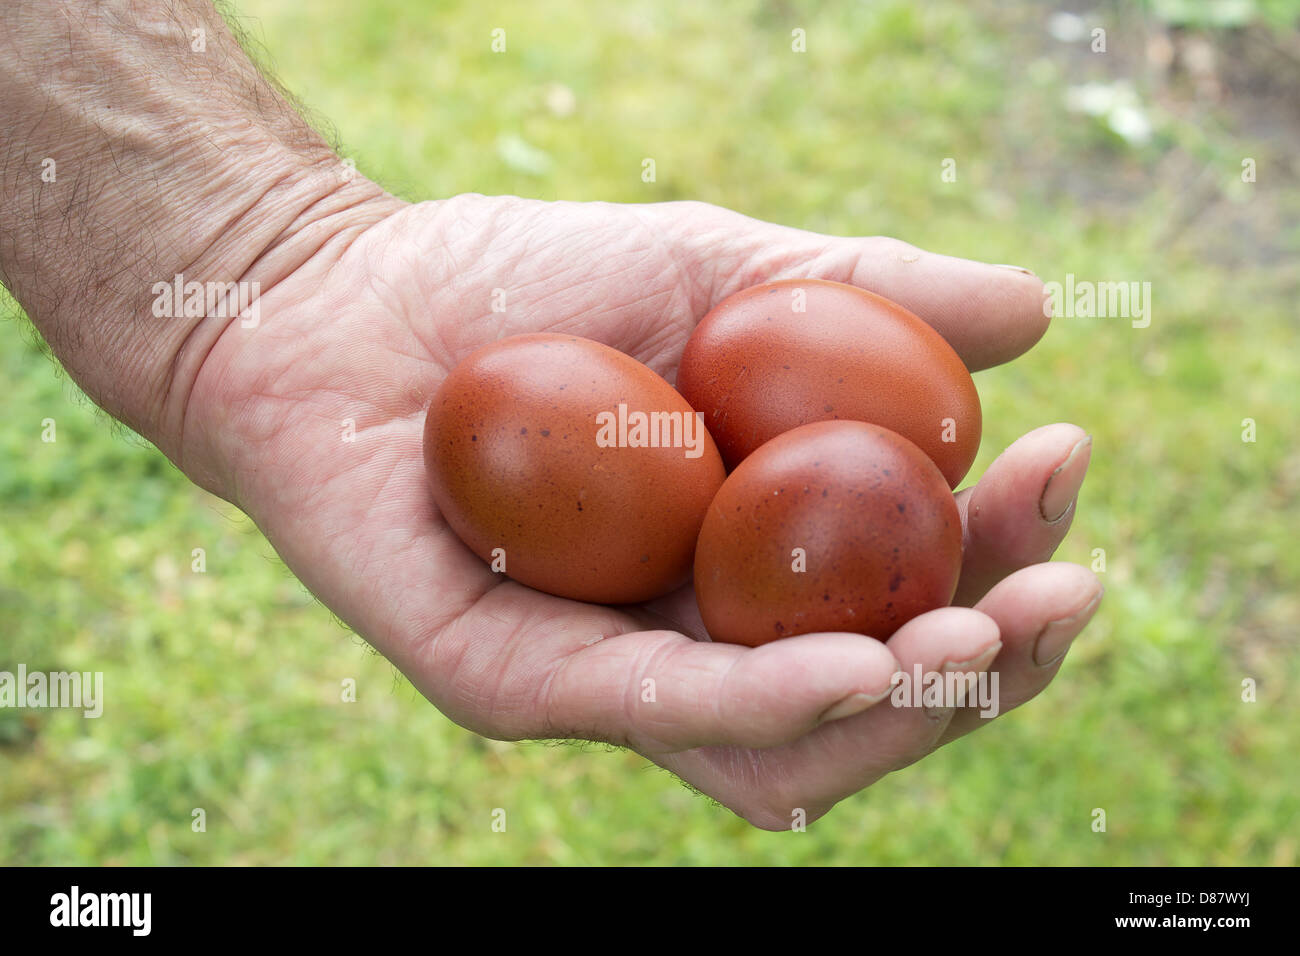 Brown huevos de gallina en el viejo my mano Foto de stock